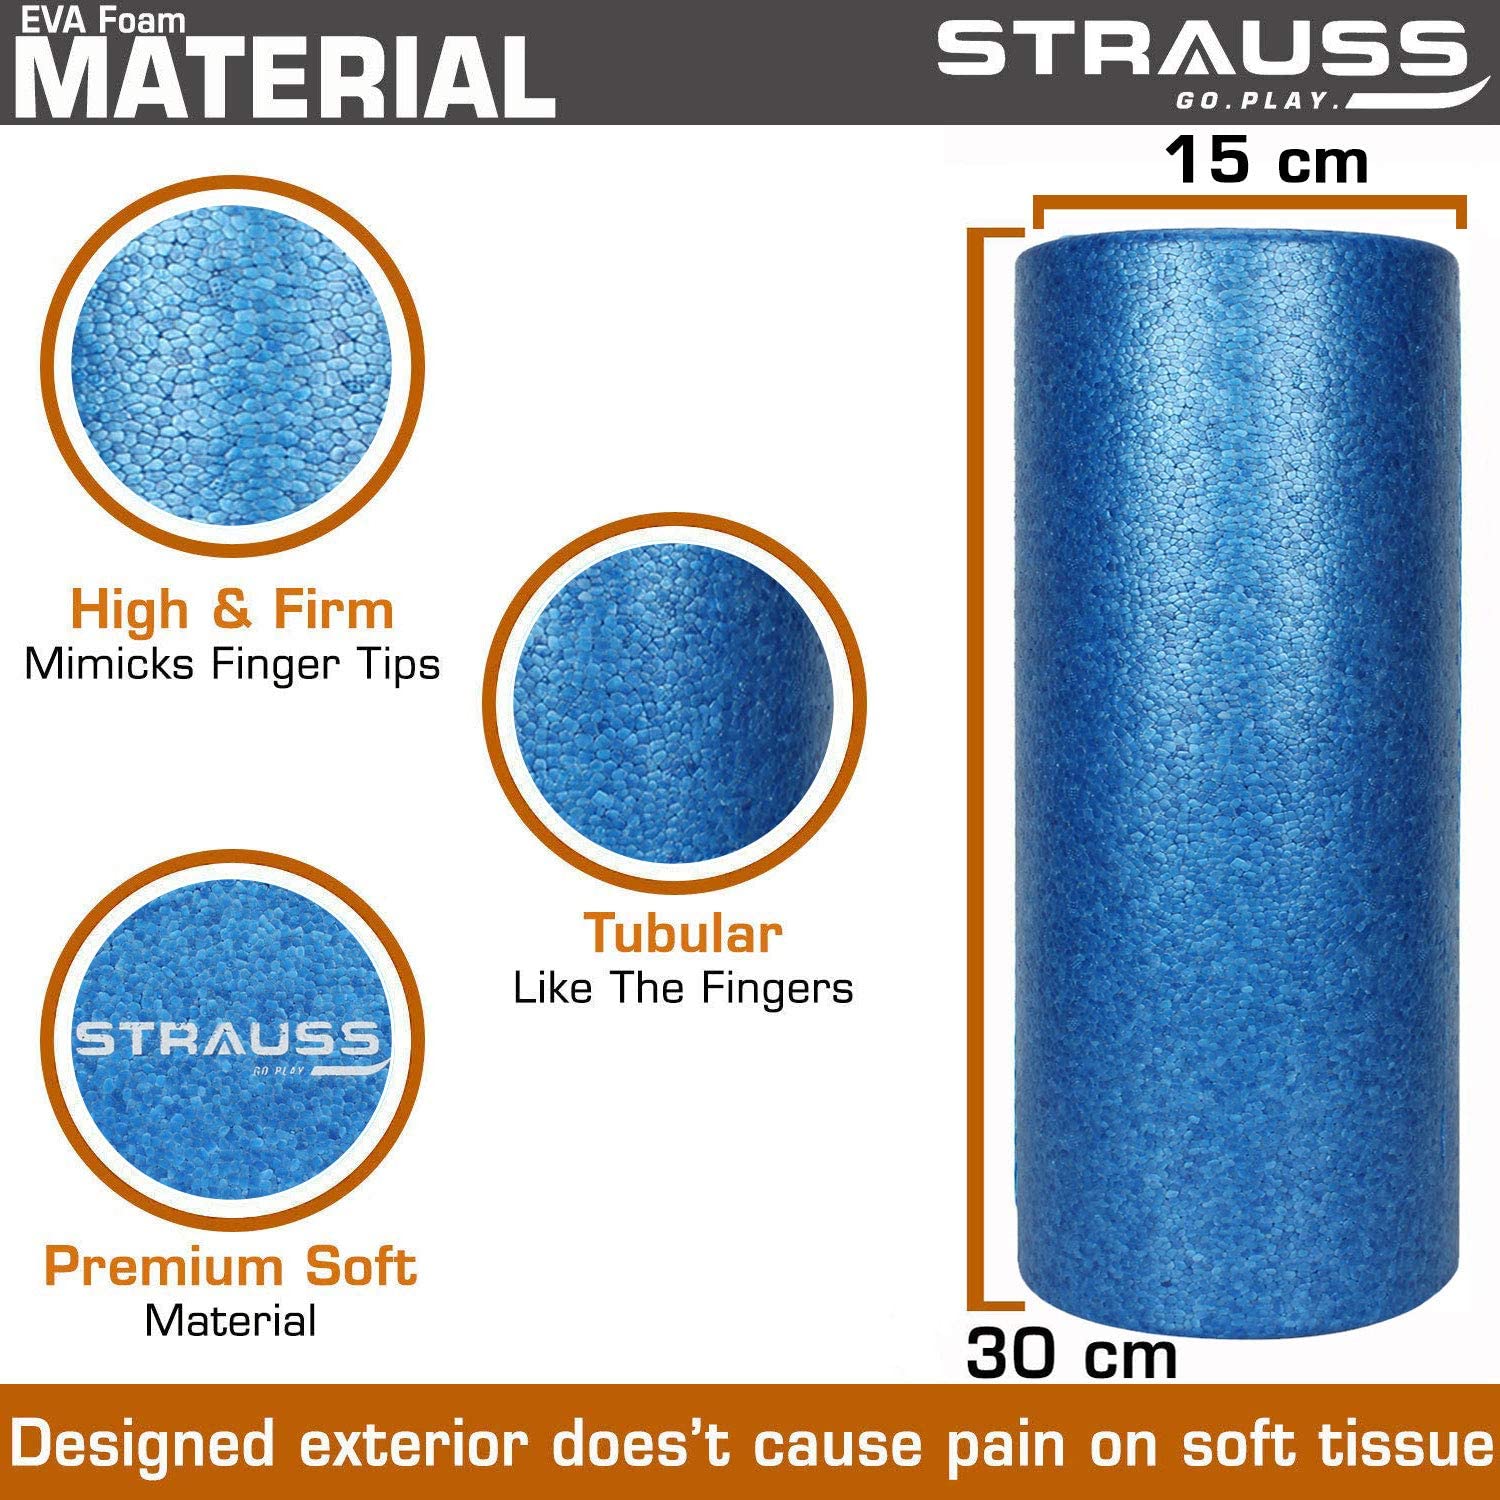 Strauss Yoga Foam Roller, 30 cm, (Black)